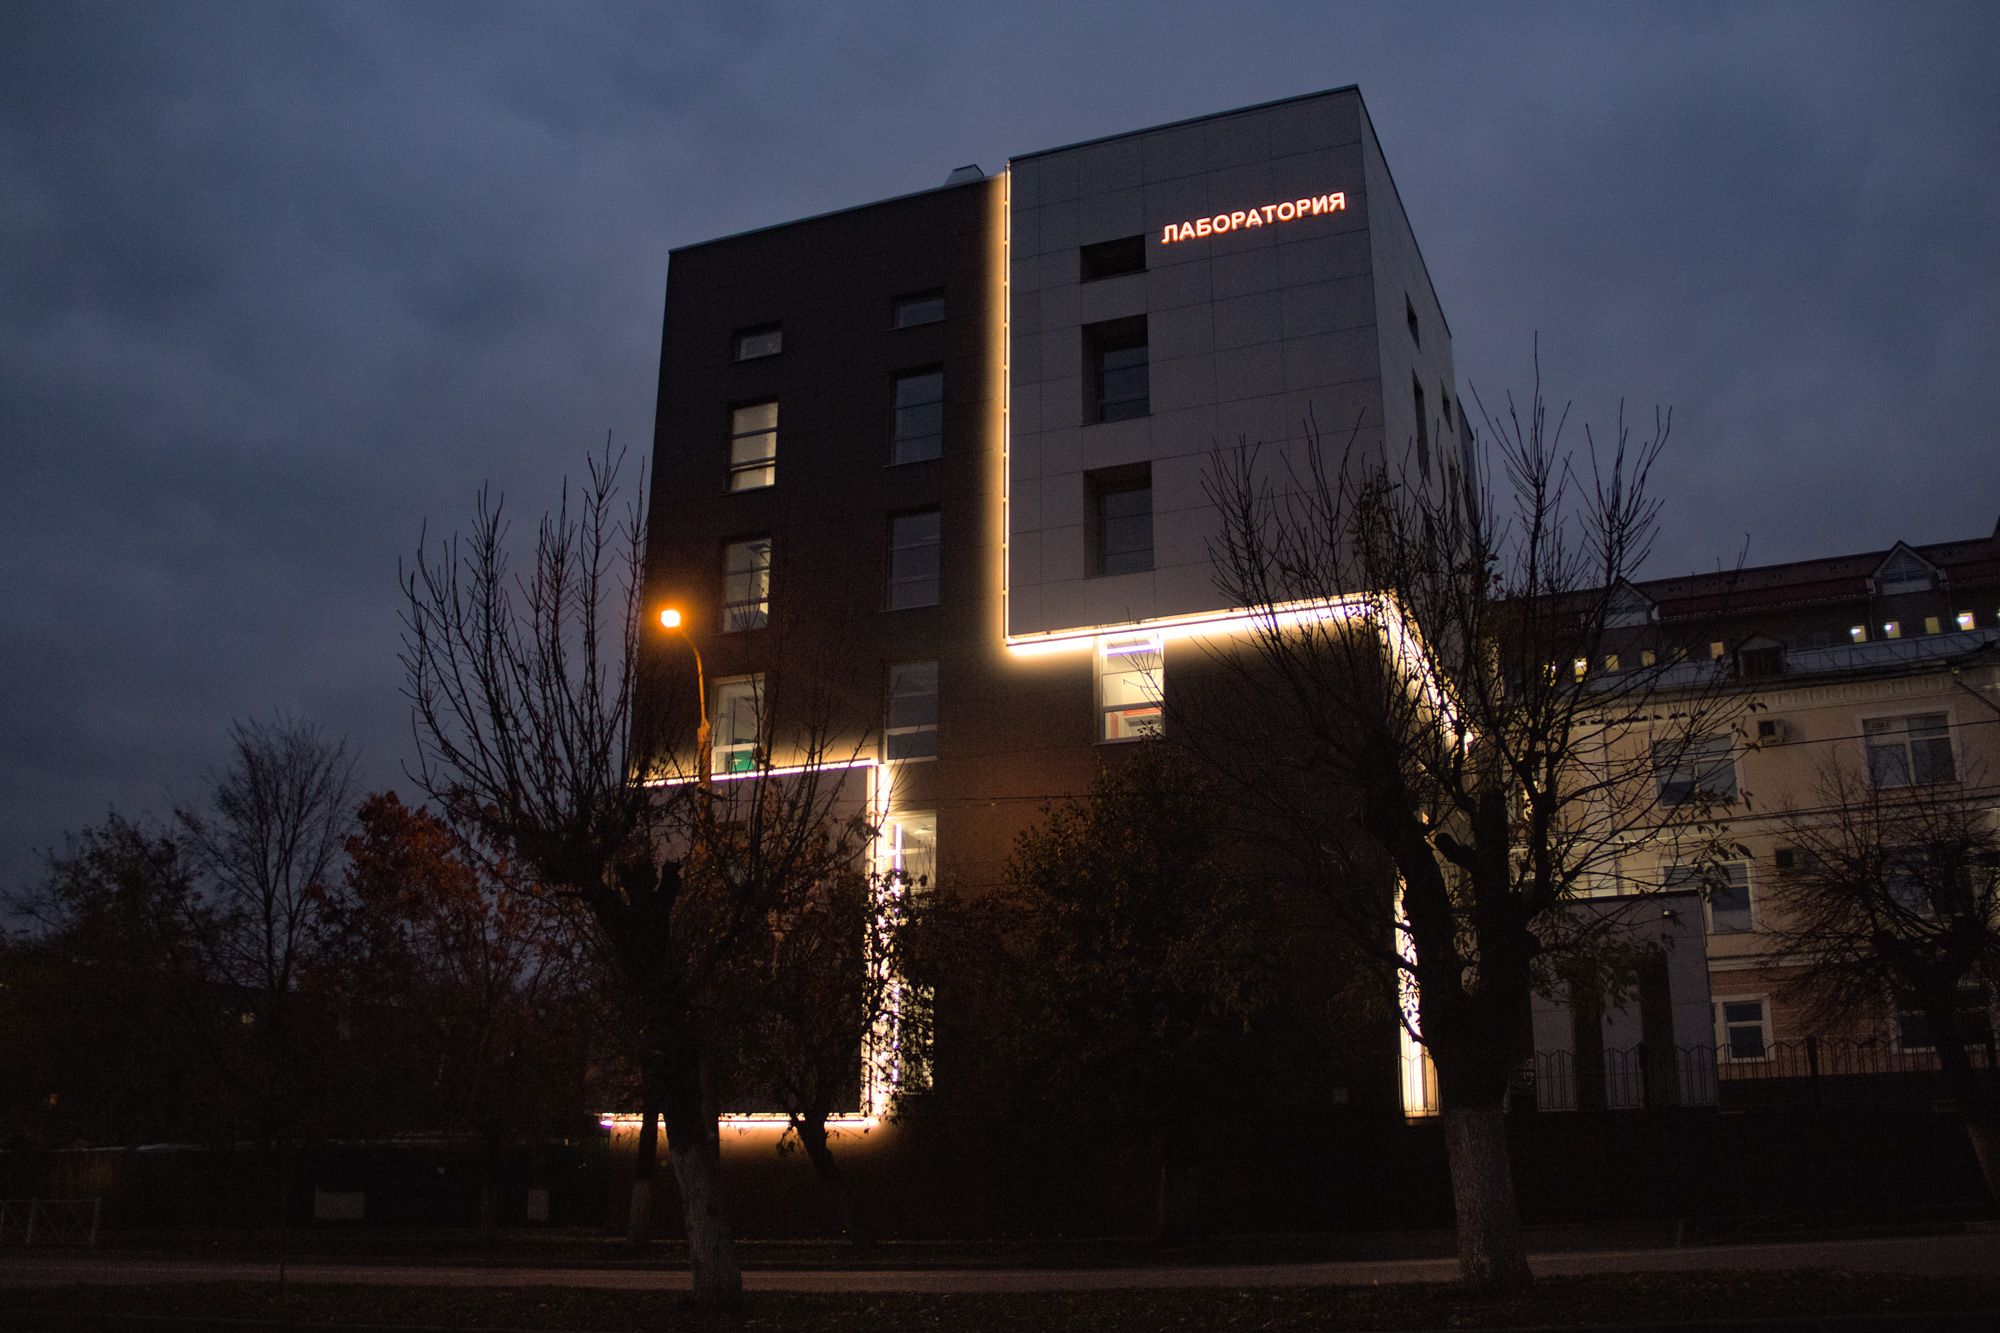 Реализованный проект архитектурной подсветки здания клинического центра